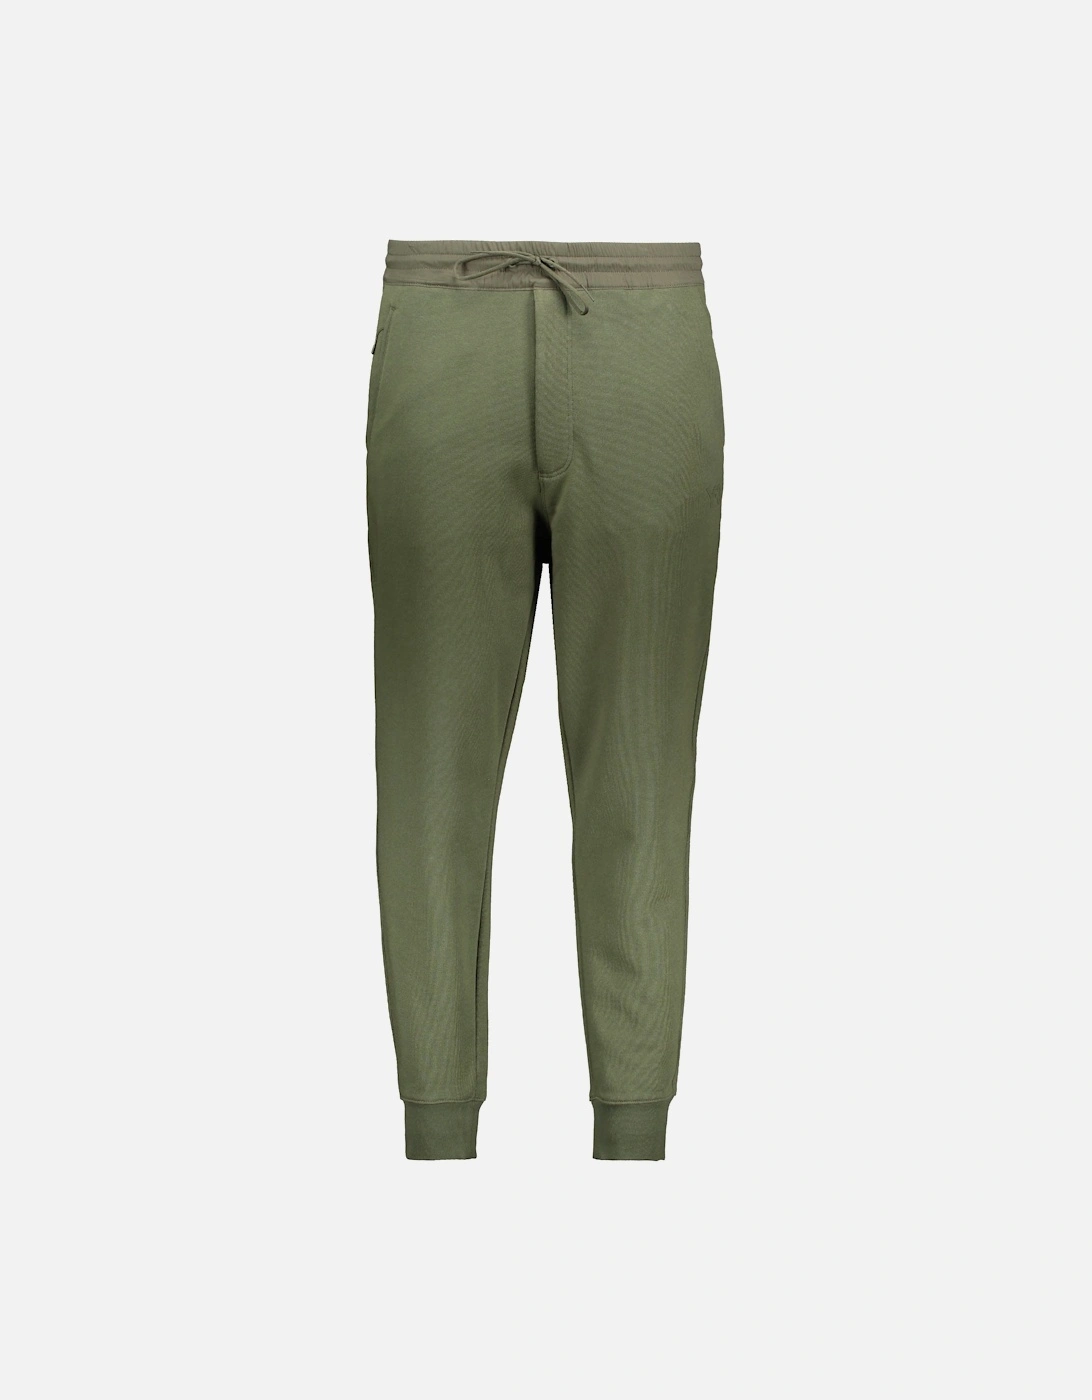 Y3 Cuffed Pants - Nectar Dark Green, 4 of 3